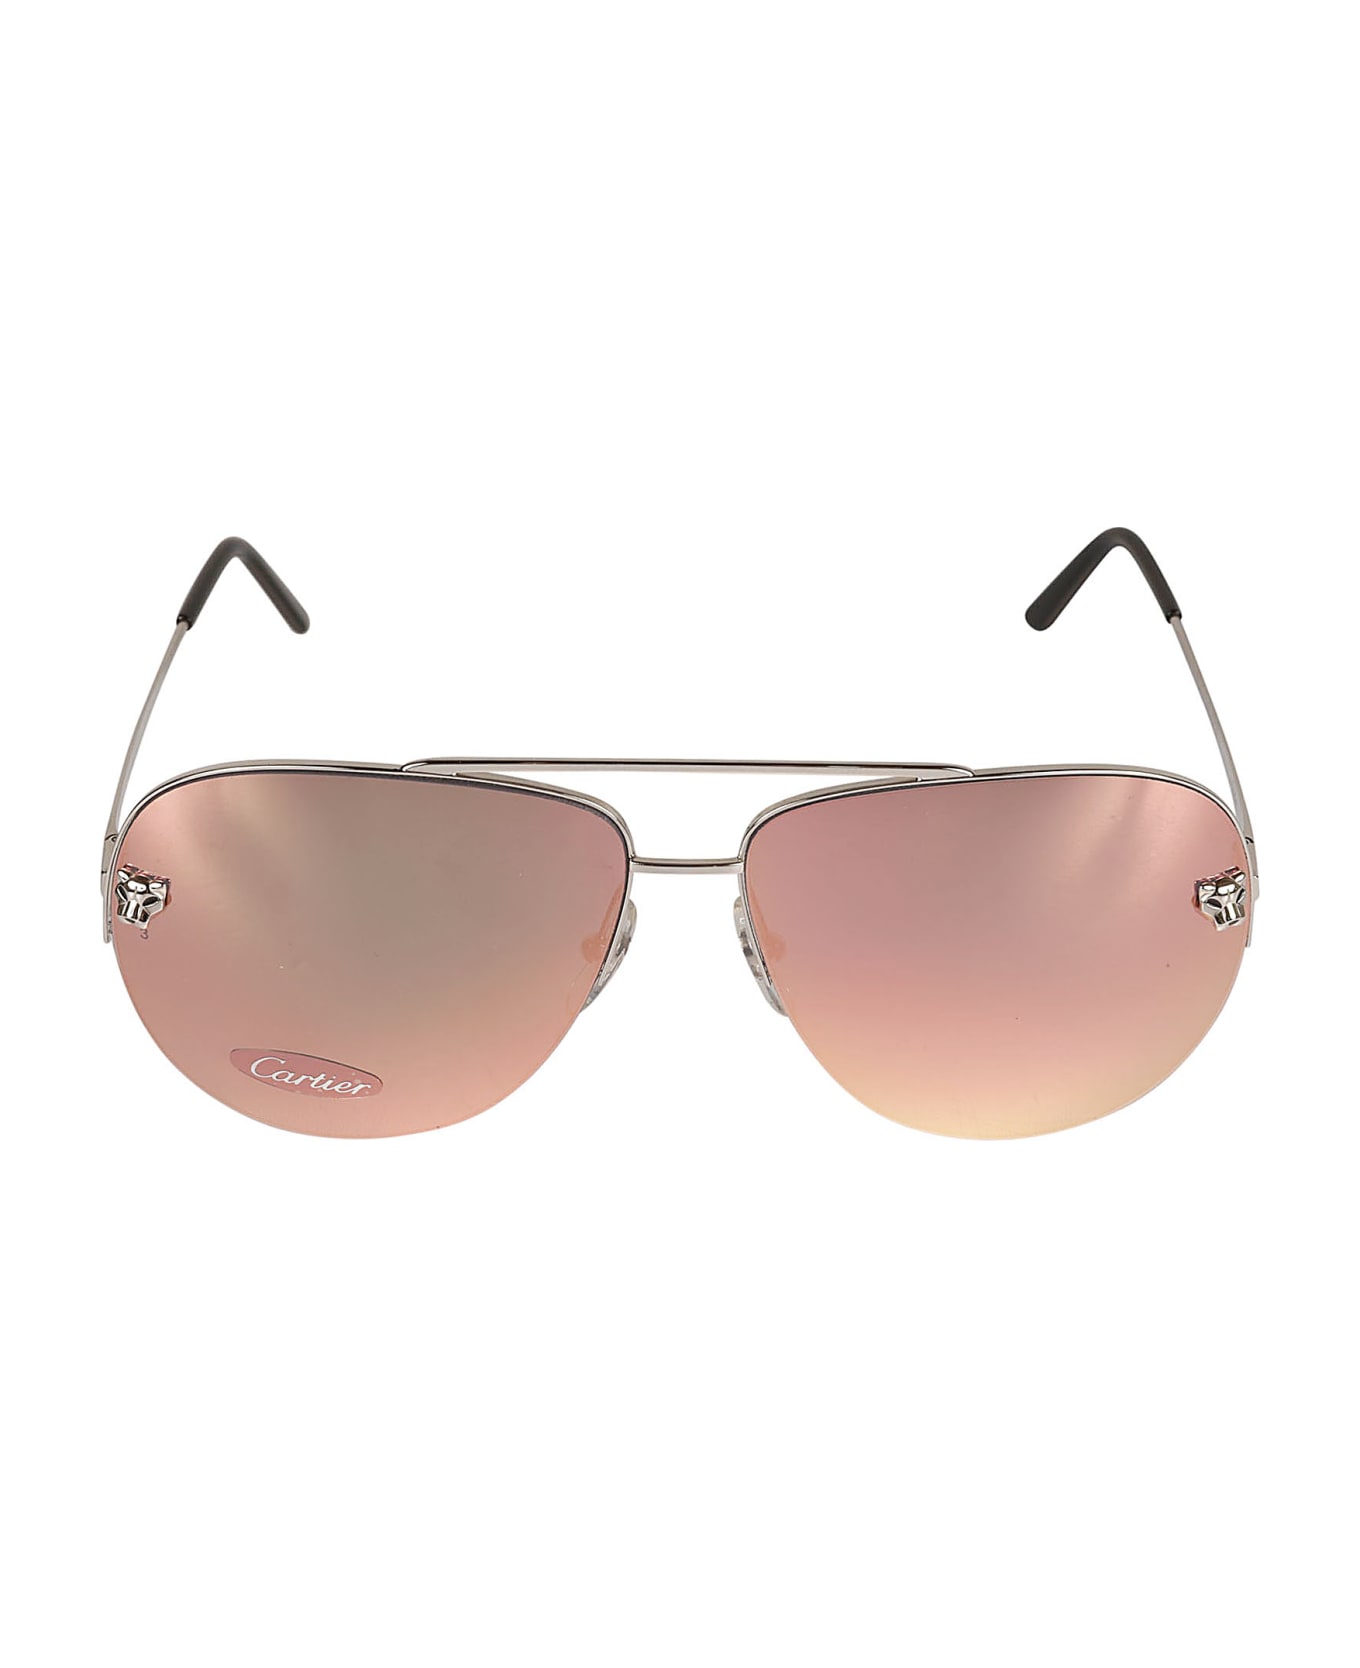 Cartier Eyewear Aviator Classic Sunglasses - PLATINUM サングラス